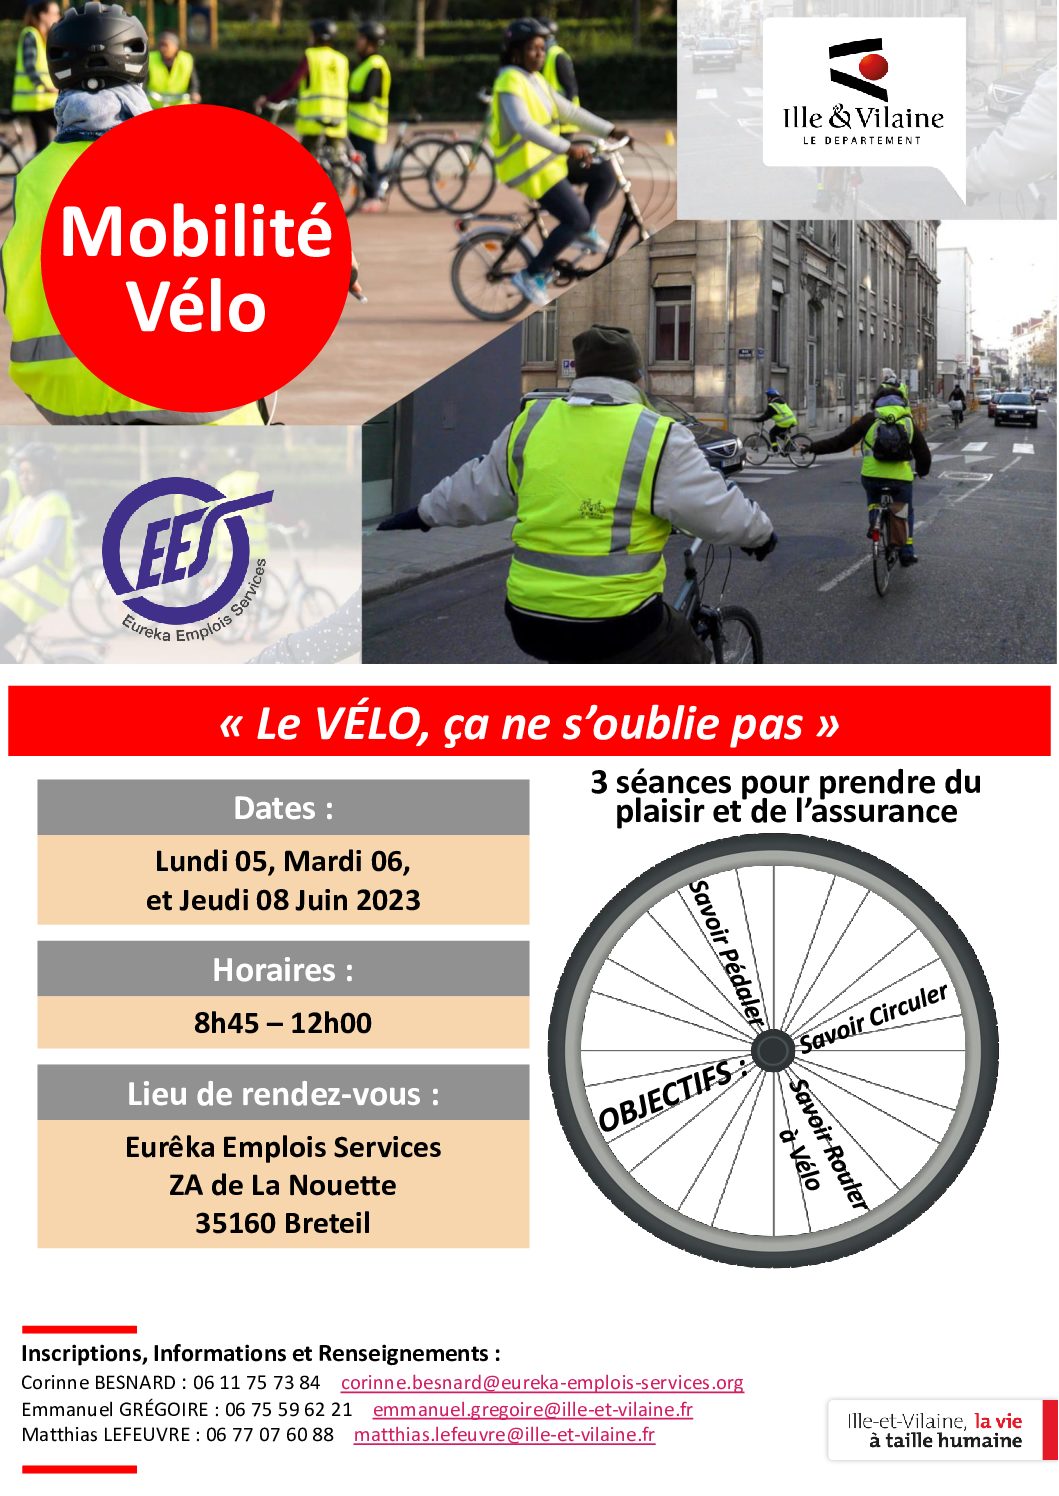 Mobilité Vélo : un nouveau cycle de 3 séances